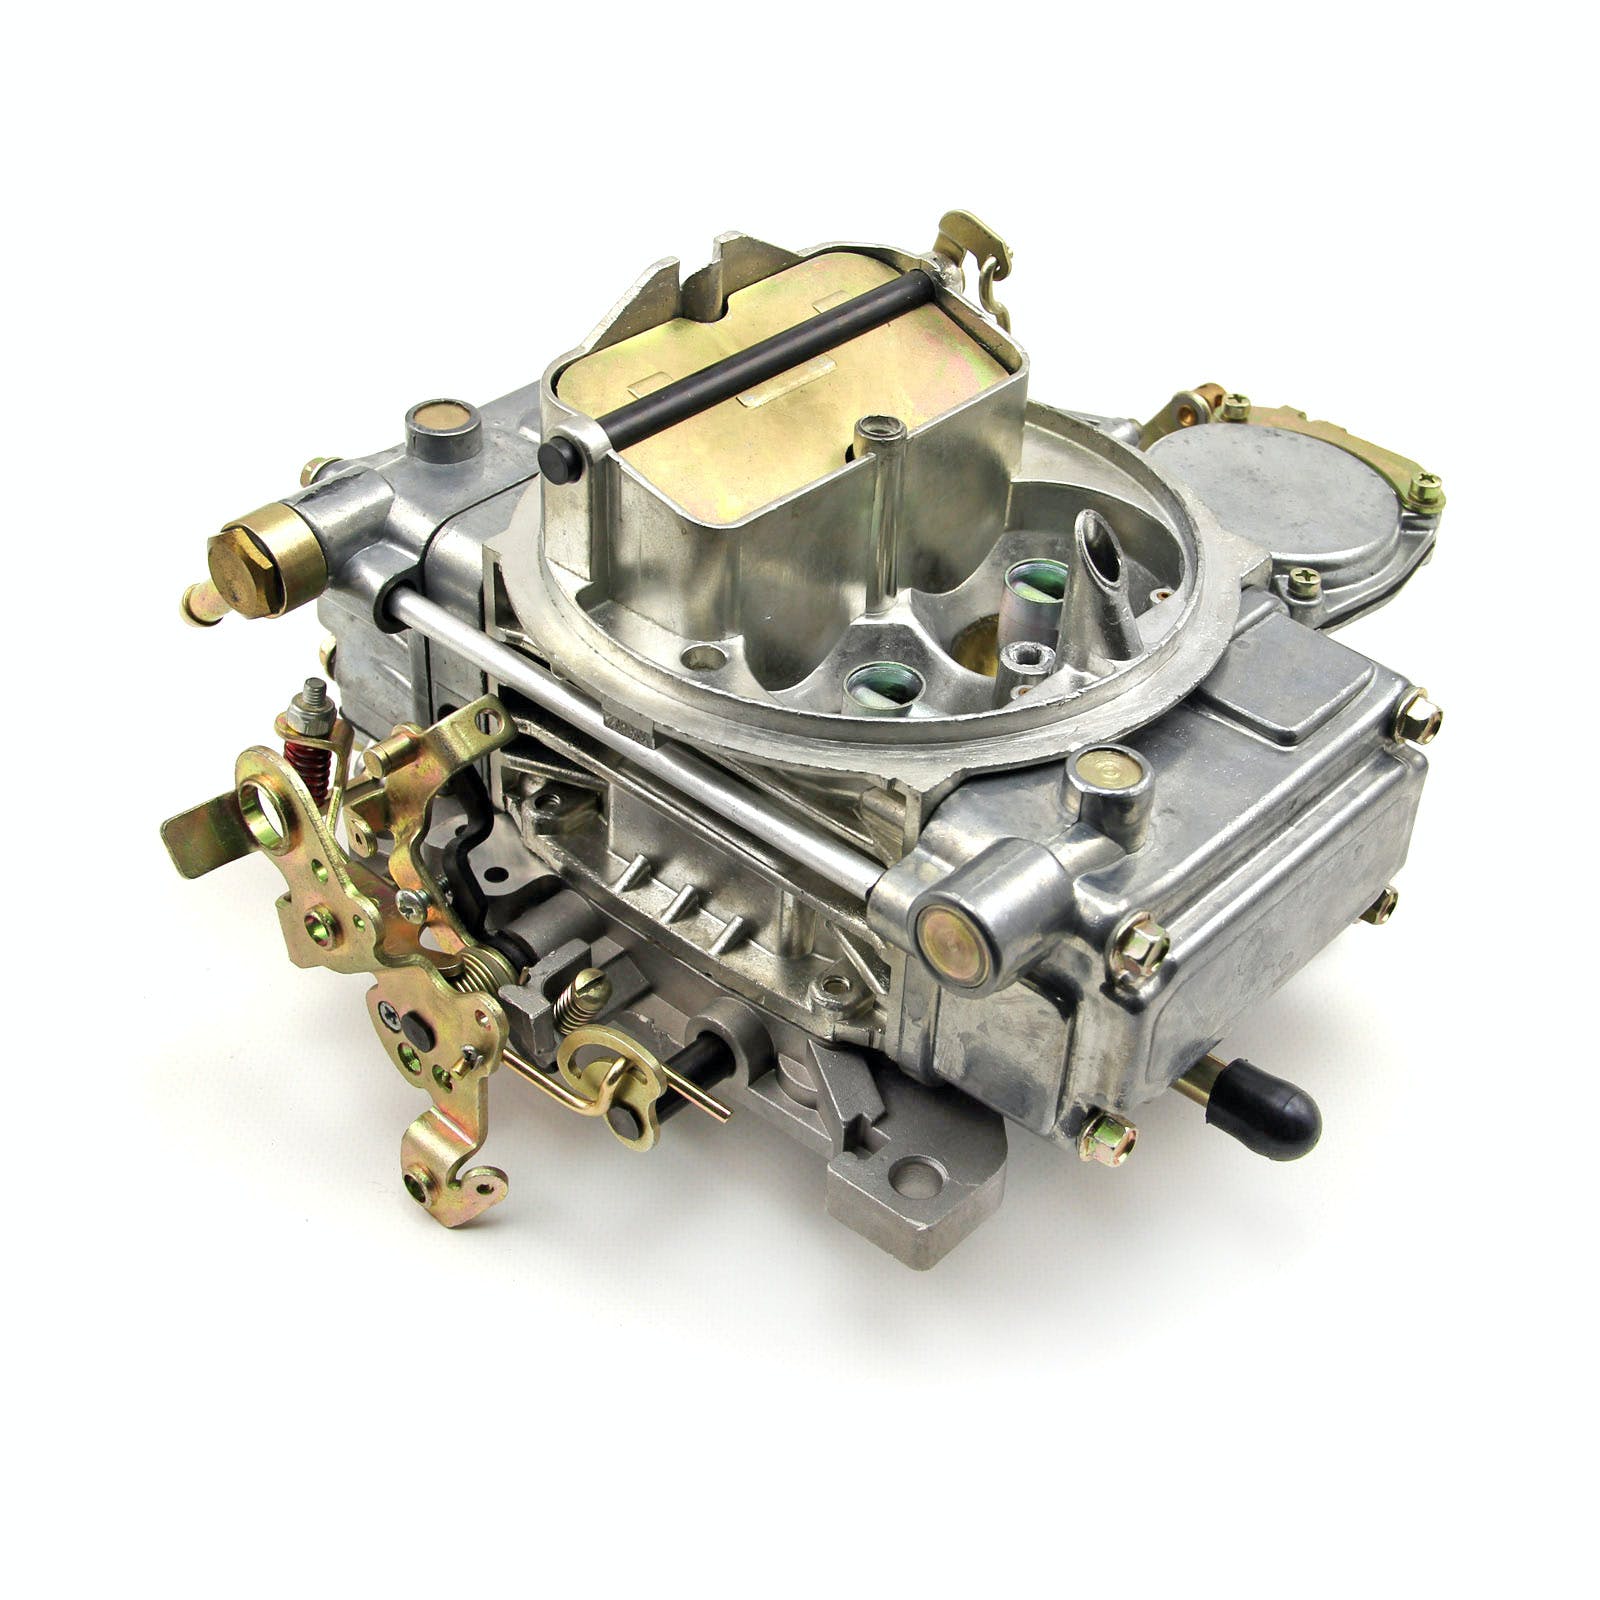 Speedmaster PCE121.1006 610 CFM Natural Finish 4-Bbl Vacuum Secondary Carburetor Built in USA